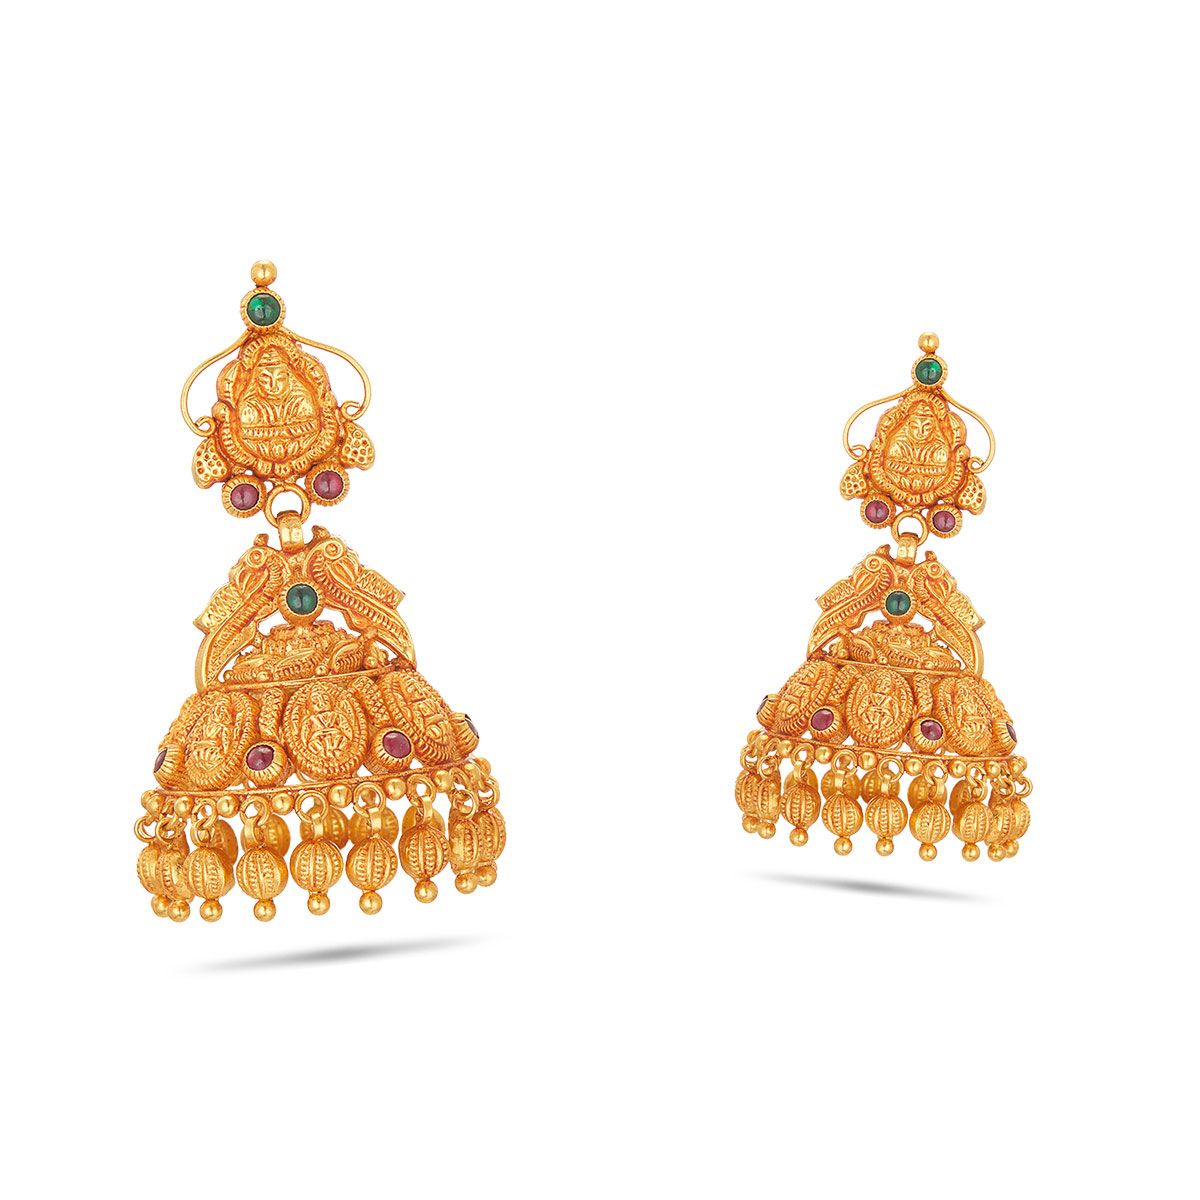 Share 85+ gold earrings for bride designs best - esthdonghoadian